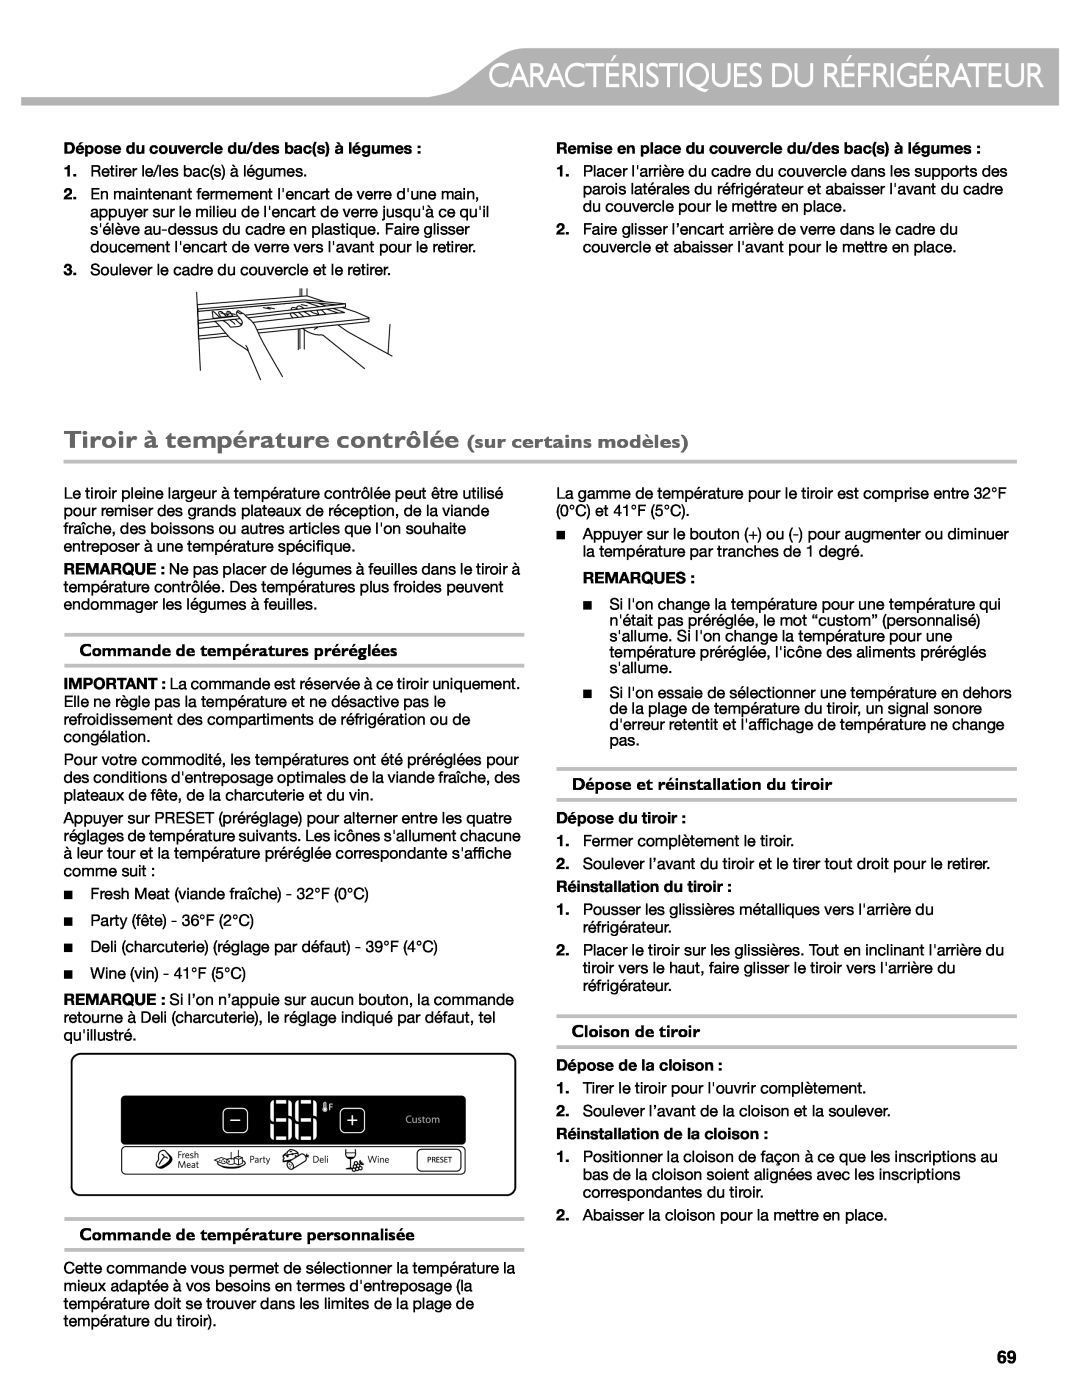 KitchenAid W10417002A Tiroir à température contrôlée sur certains modèles, Commande de températures préréglées, Remarques 